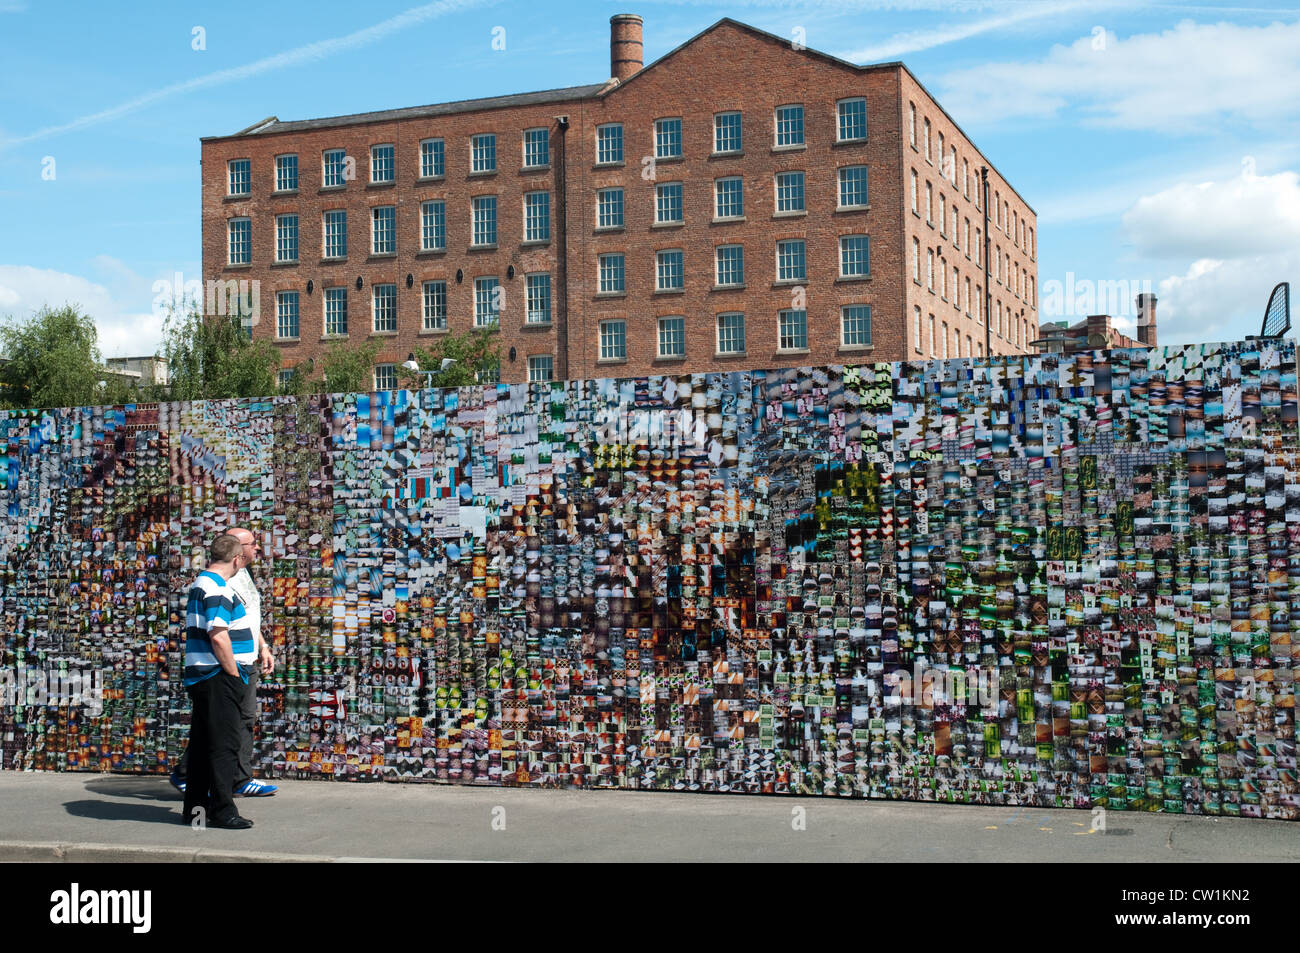 LomoWall, Manchester. Eine Wand von Bildern aus 14.000 Lomography Bilder, 500 Personen erstellt. Tarif Street, Manchester. Stockfoto